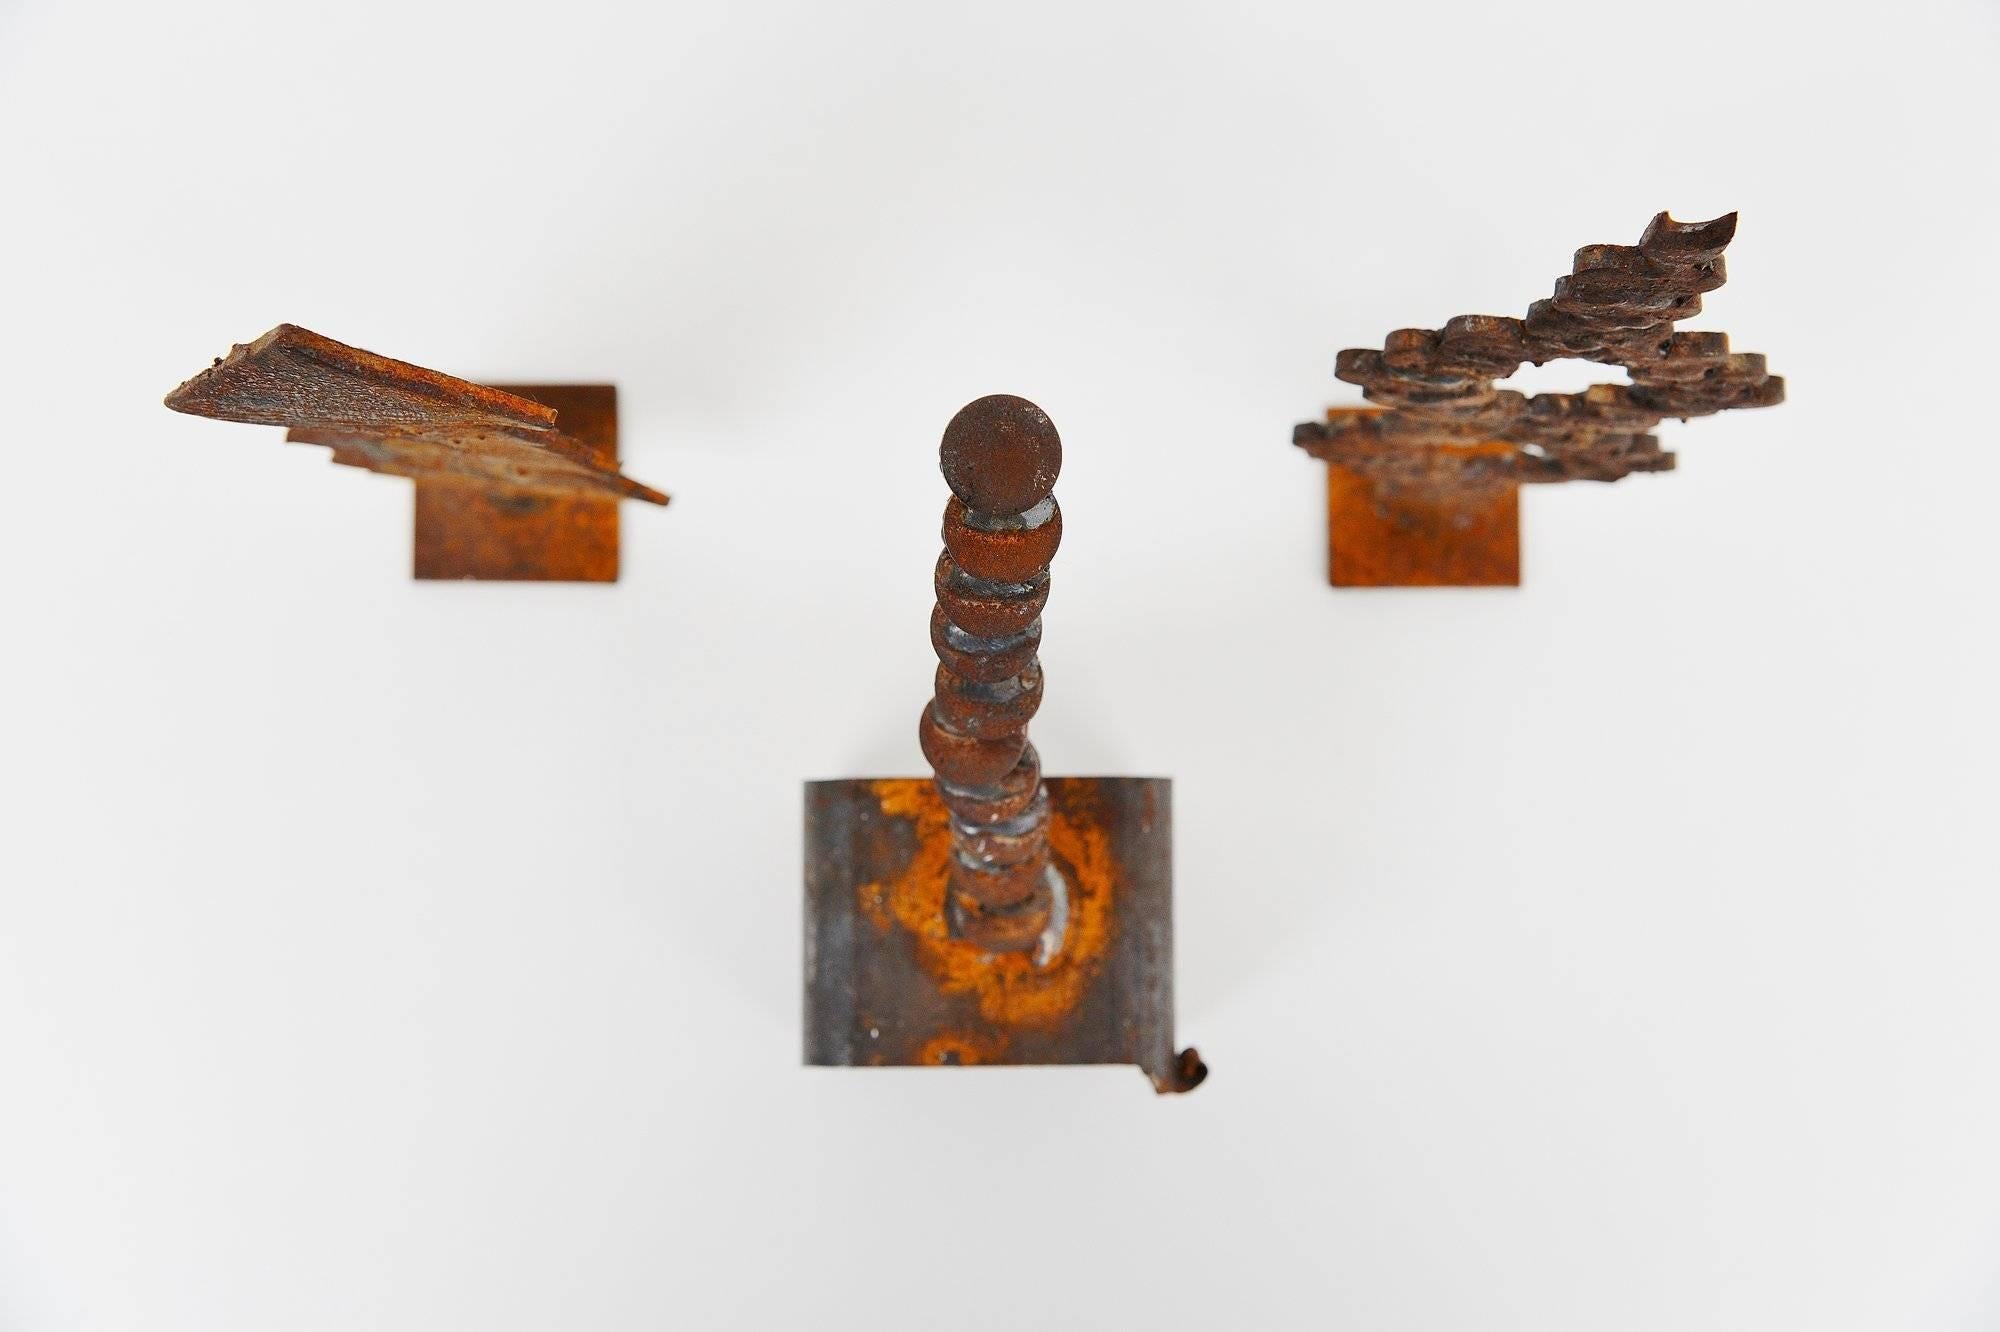 Très bel ensemble de 3 sculptures en fer conçues par Theo Niermeijer (1940-2005) Amsterdam, 1970. Cet ensemble de trois sculptures géométriques est composé de pièces en fer soudées. Les petites sculptures sont pour la plupart des études ou des